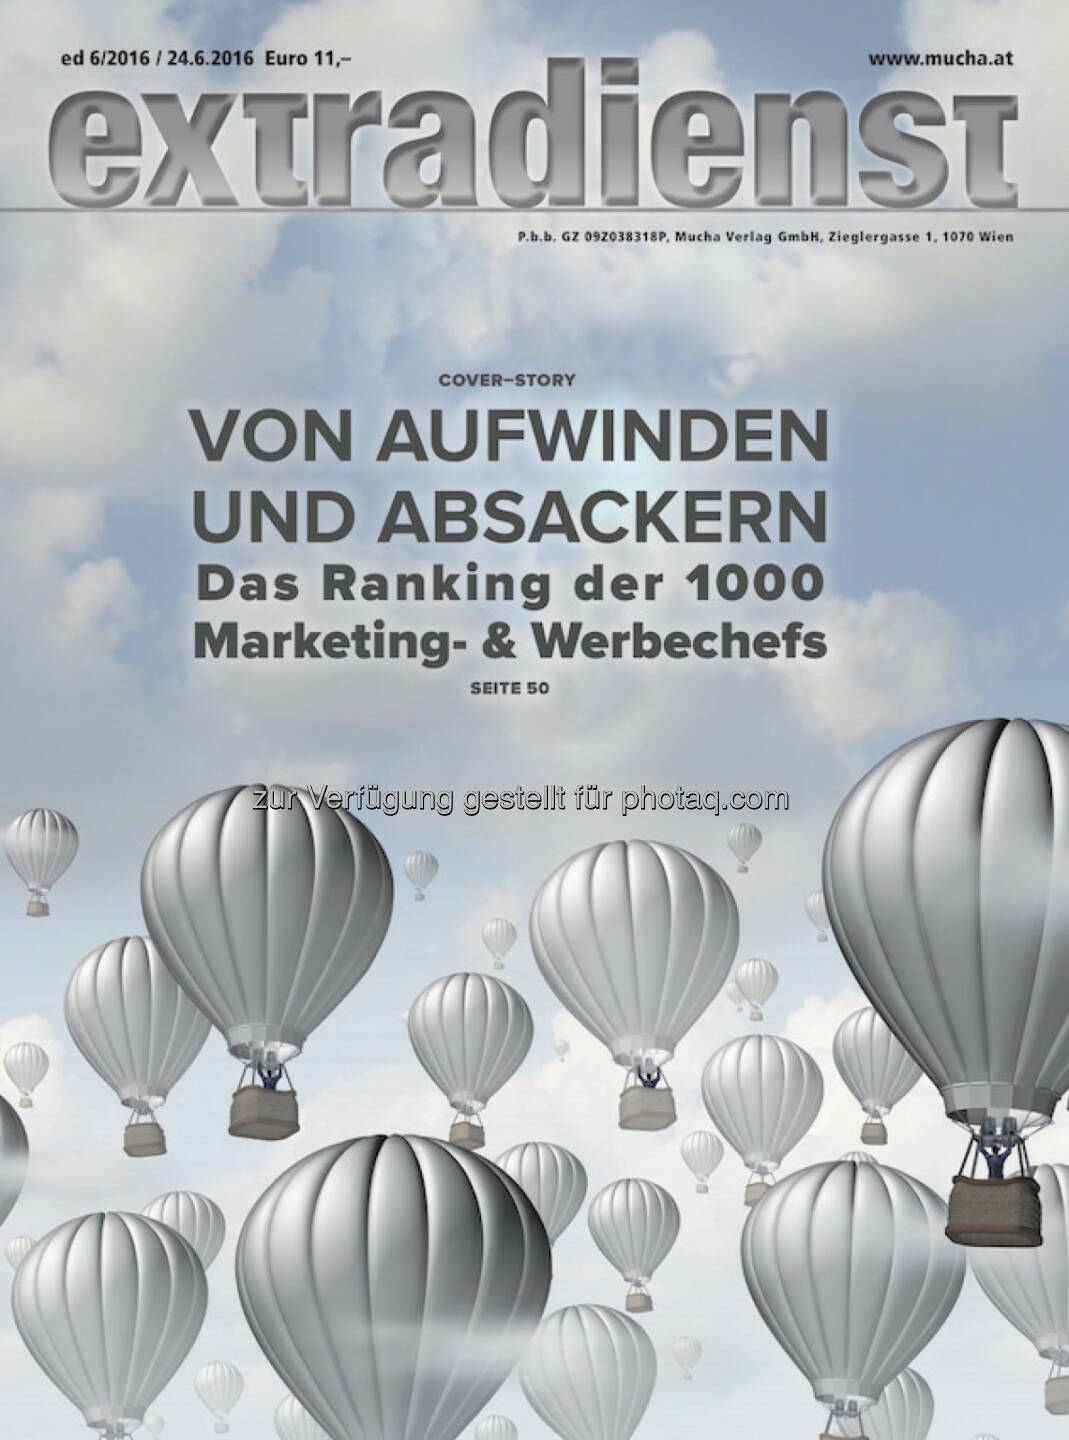 Coverillustration ExtraDienst-Ausgabe : ExtraDienst 6/2016 : Das Ranking der Top 1000 Marketingleiter : Fotocredit: Mucha Verlag/Grafik Mucha Verlag